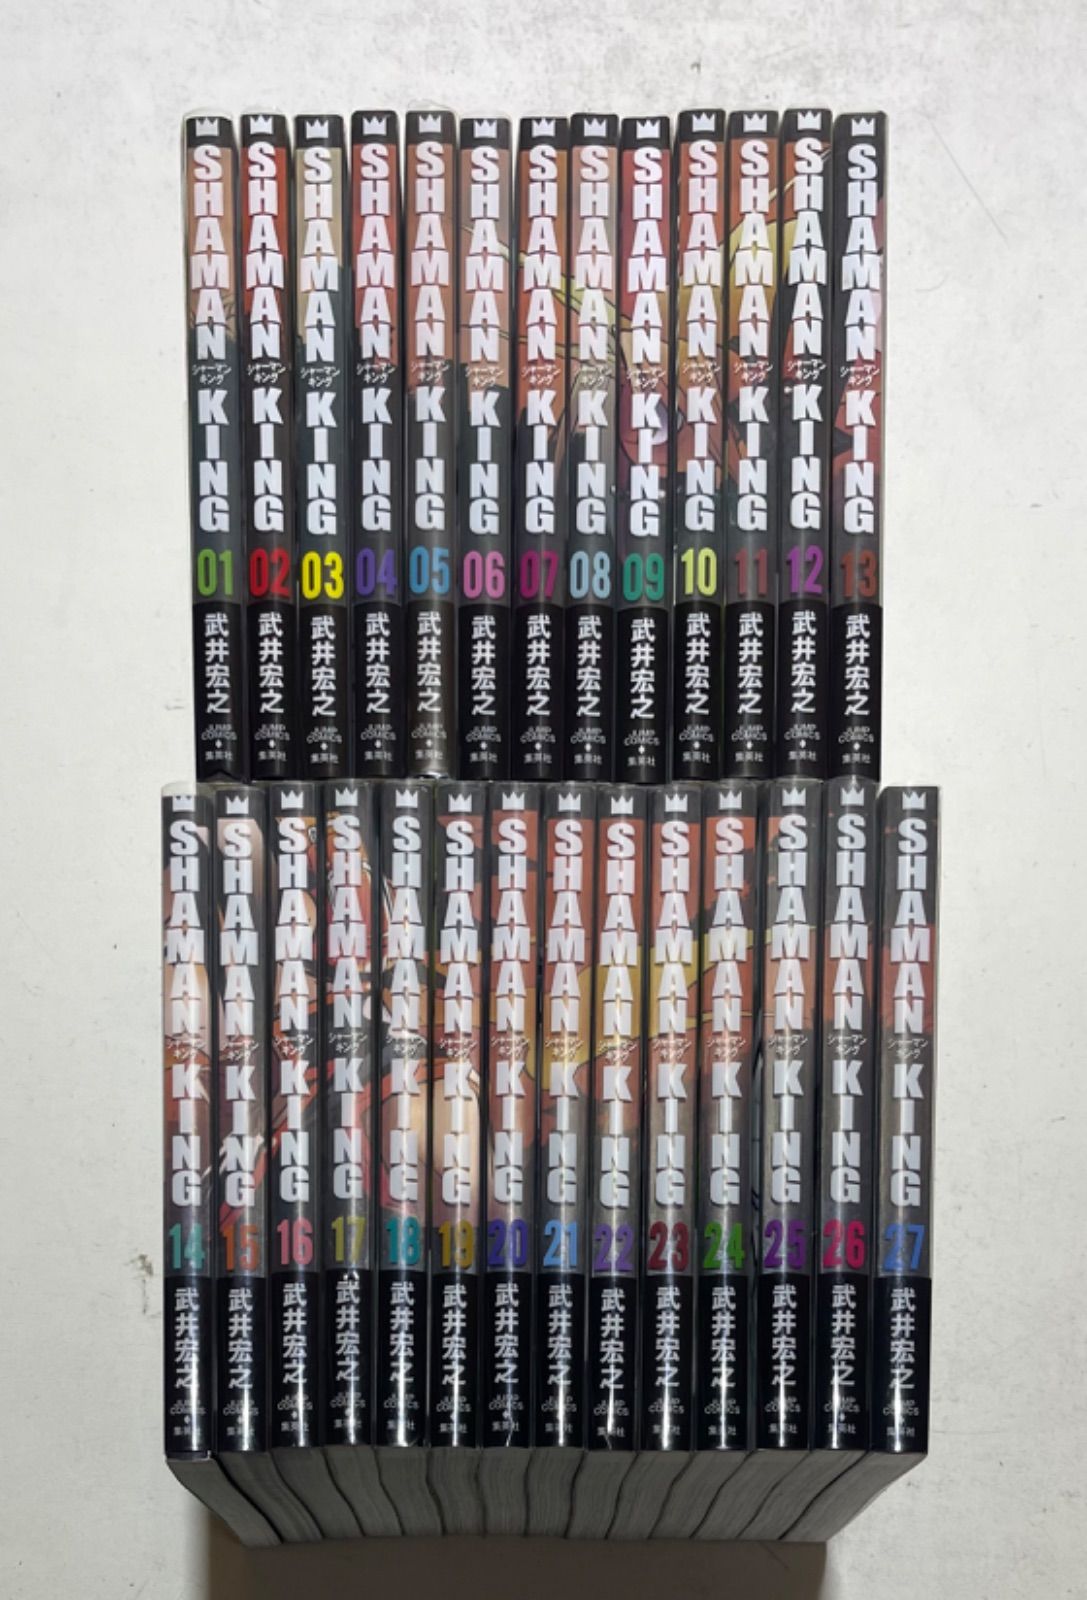 シャーマンキング 完全版 全27巻完結セット+公式ガイド 武井 宏之 集英社 - メルカリ